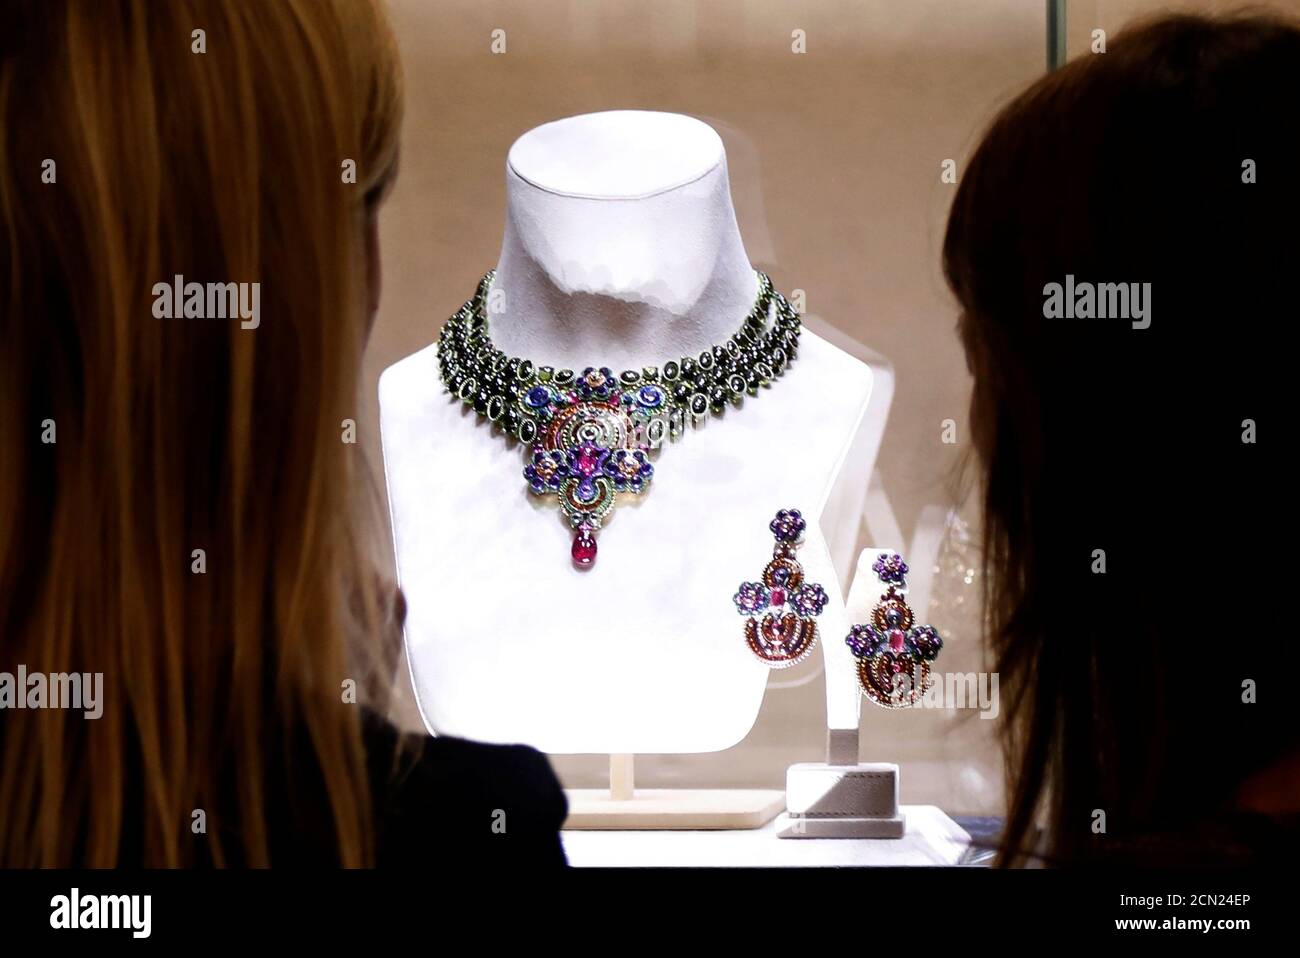 Las joyas de la Red Carpet 2018 Collection se exhiben en la joyería de lujo  Chopard tienda en París, Francia, 4 de julio de 2018. Chopard presentó su  última colección de joyas